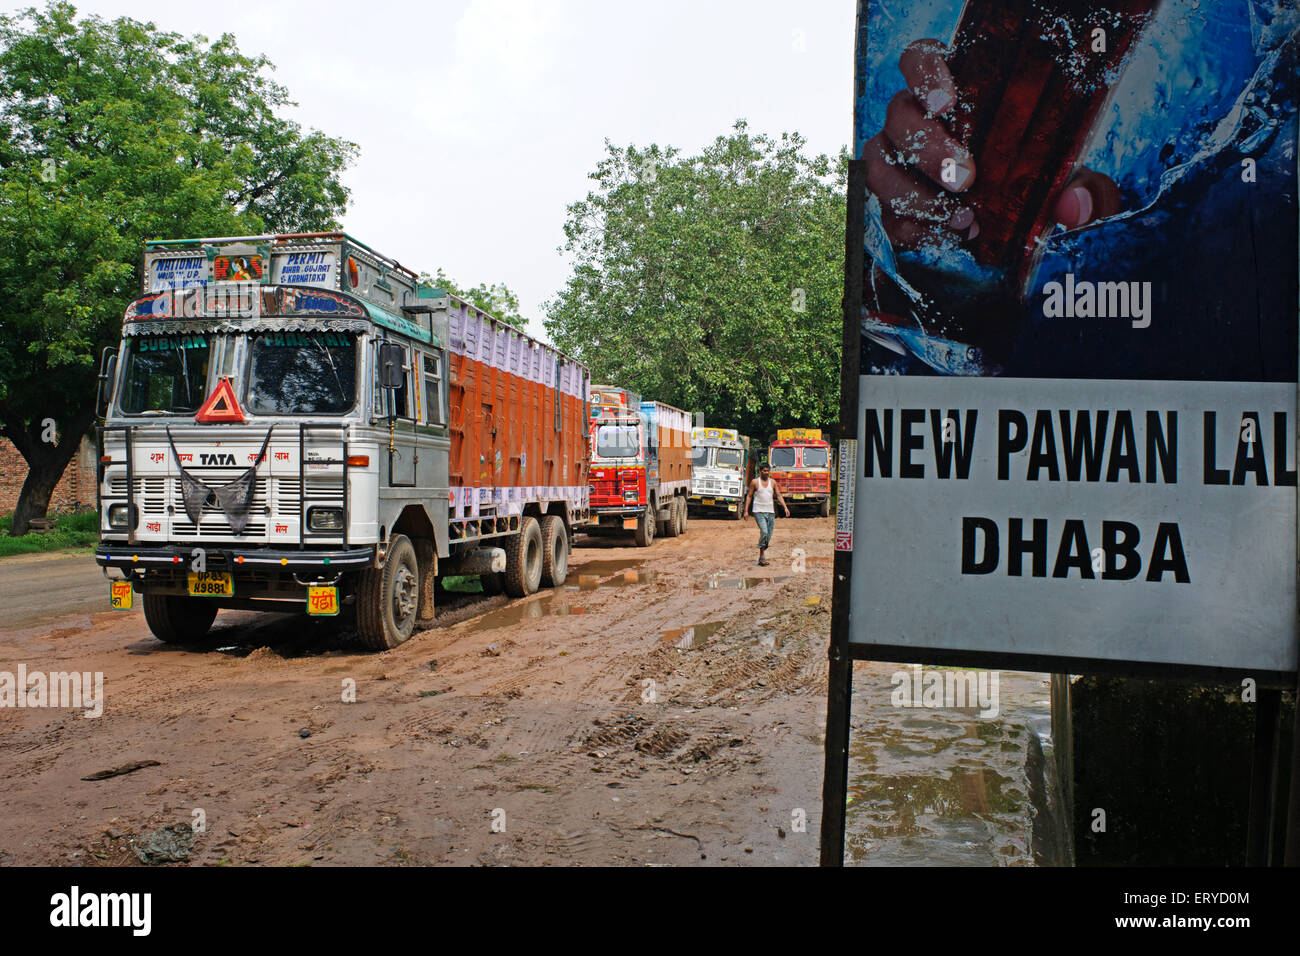 Puesto de estacionamiento para camiones , nuevo peón lal dhaba ; restaurante al borde de la carretera , Uttar Pradesh ; India , asia Foto de stock